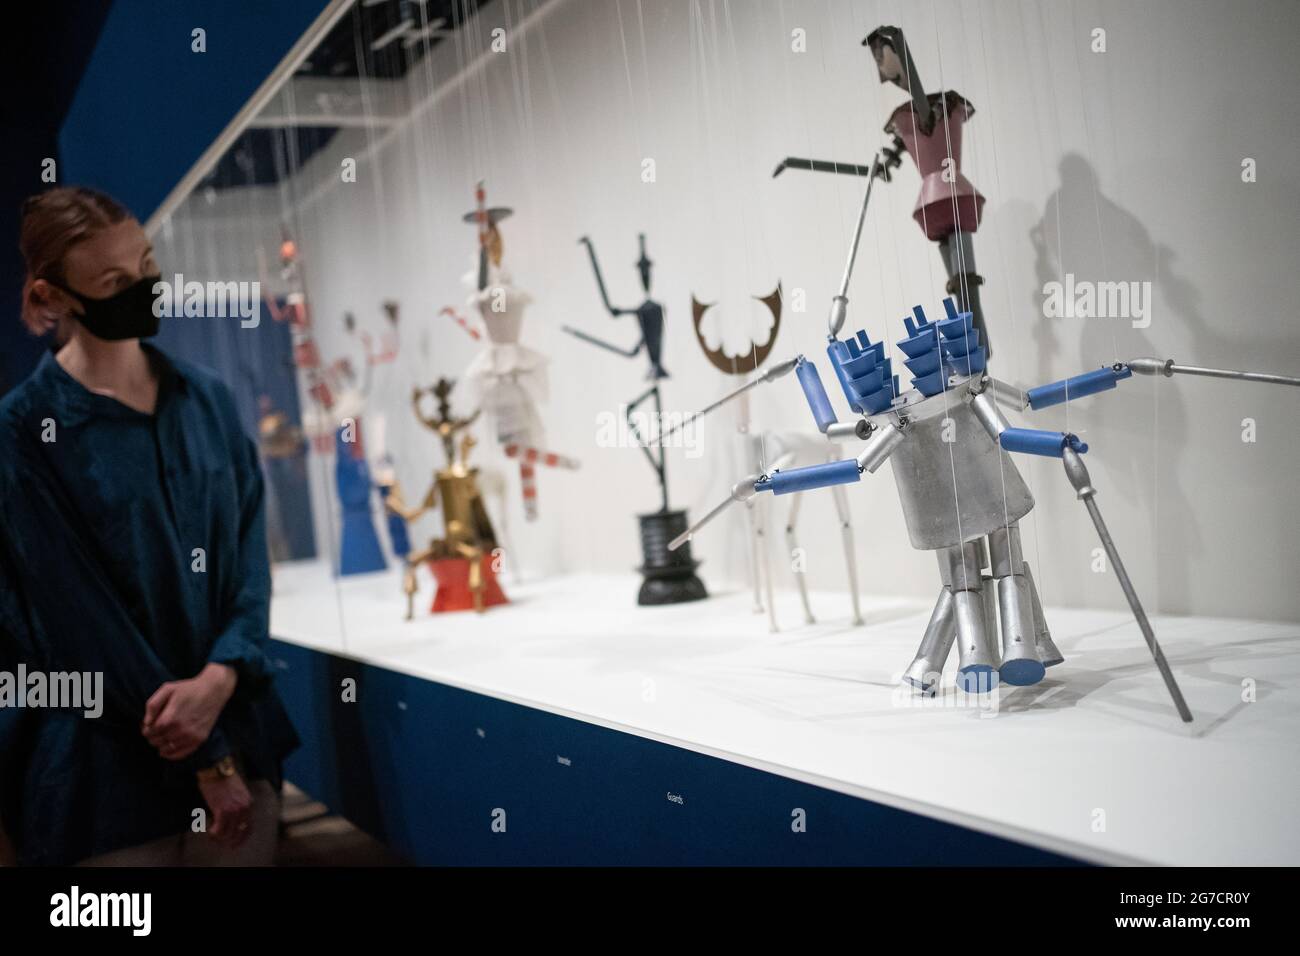 Une personne voit 17 marionnettes à cordes Dada Marionettes King Stag de Sophie Taeuber-ARP exposées lors d'un appel photo pour la nouvelle exposition Sophie Taeuber-ARP au Tate Modern de Londres. Date de la photo: Mardi 13 juillet 2021. Banque D'Images